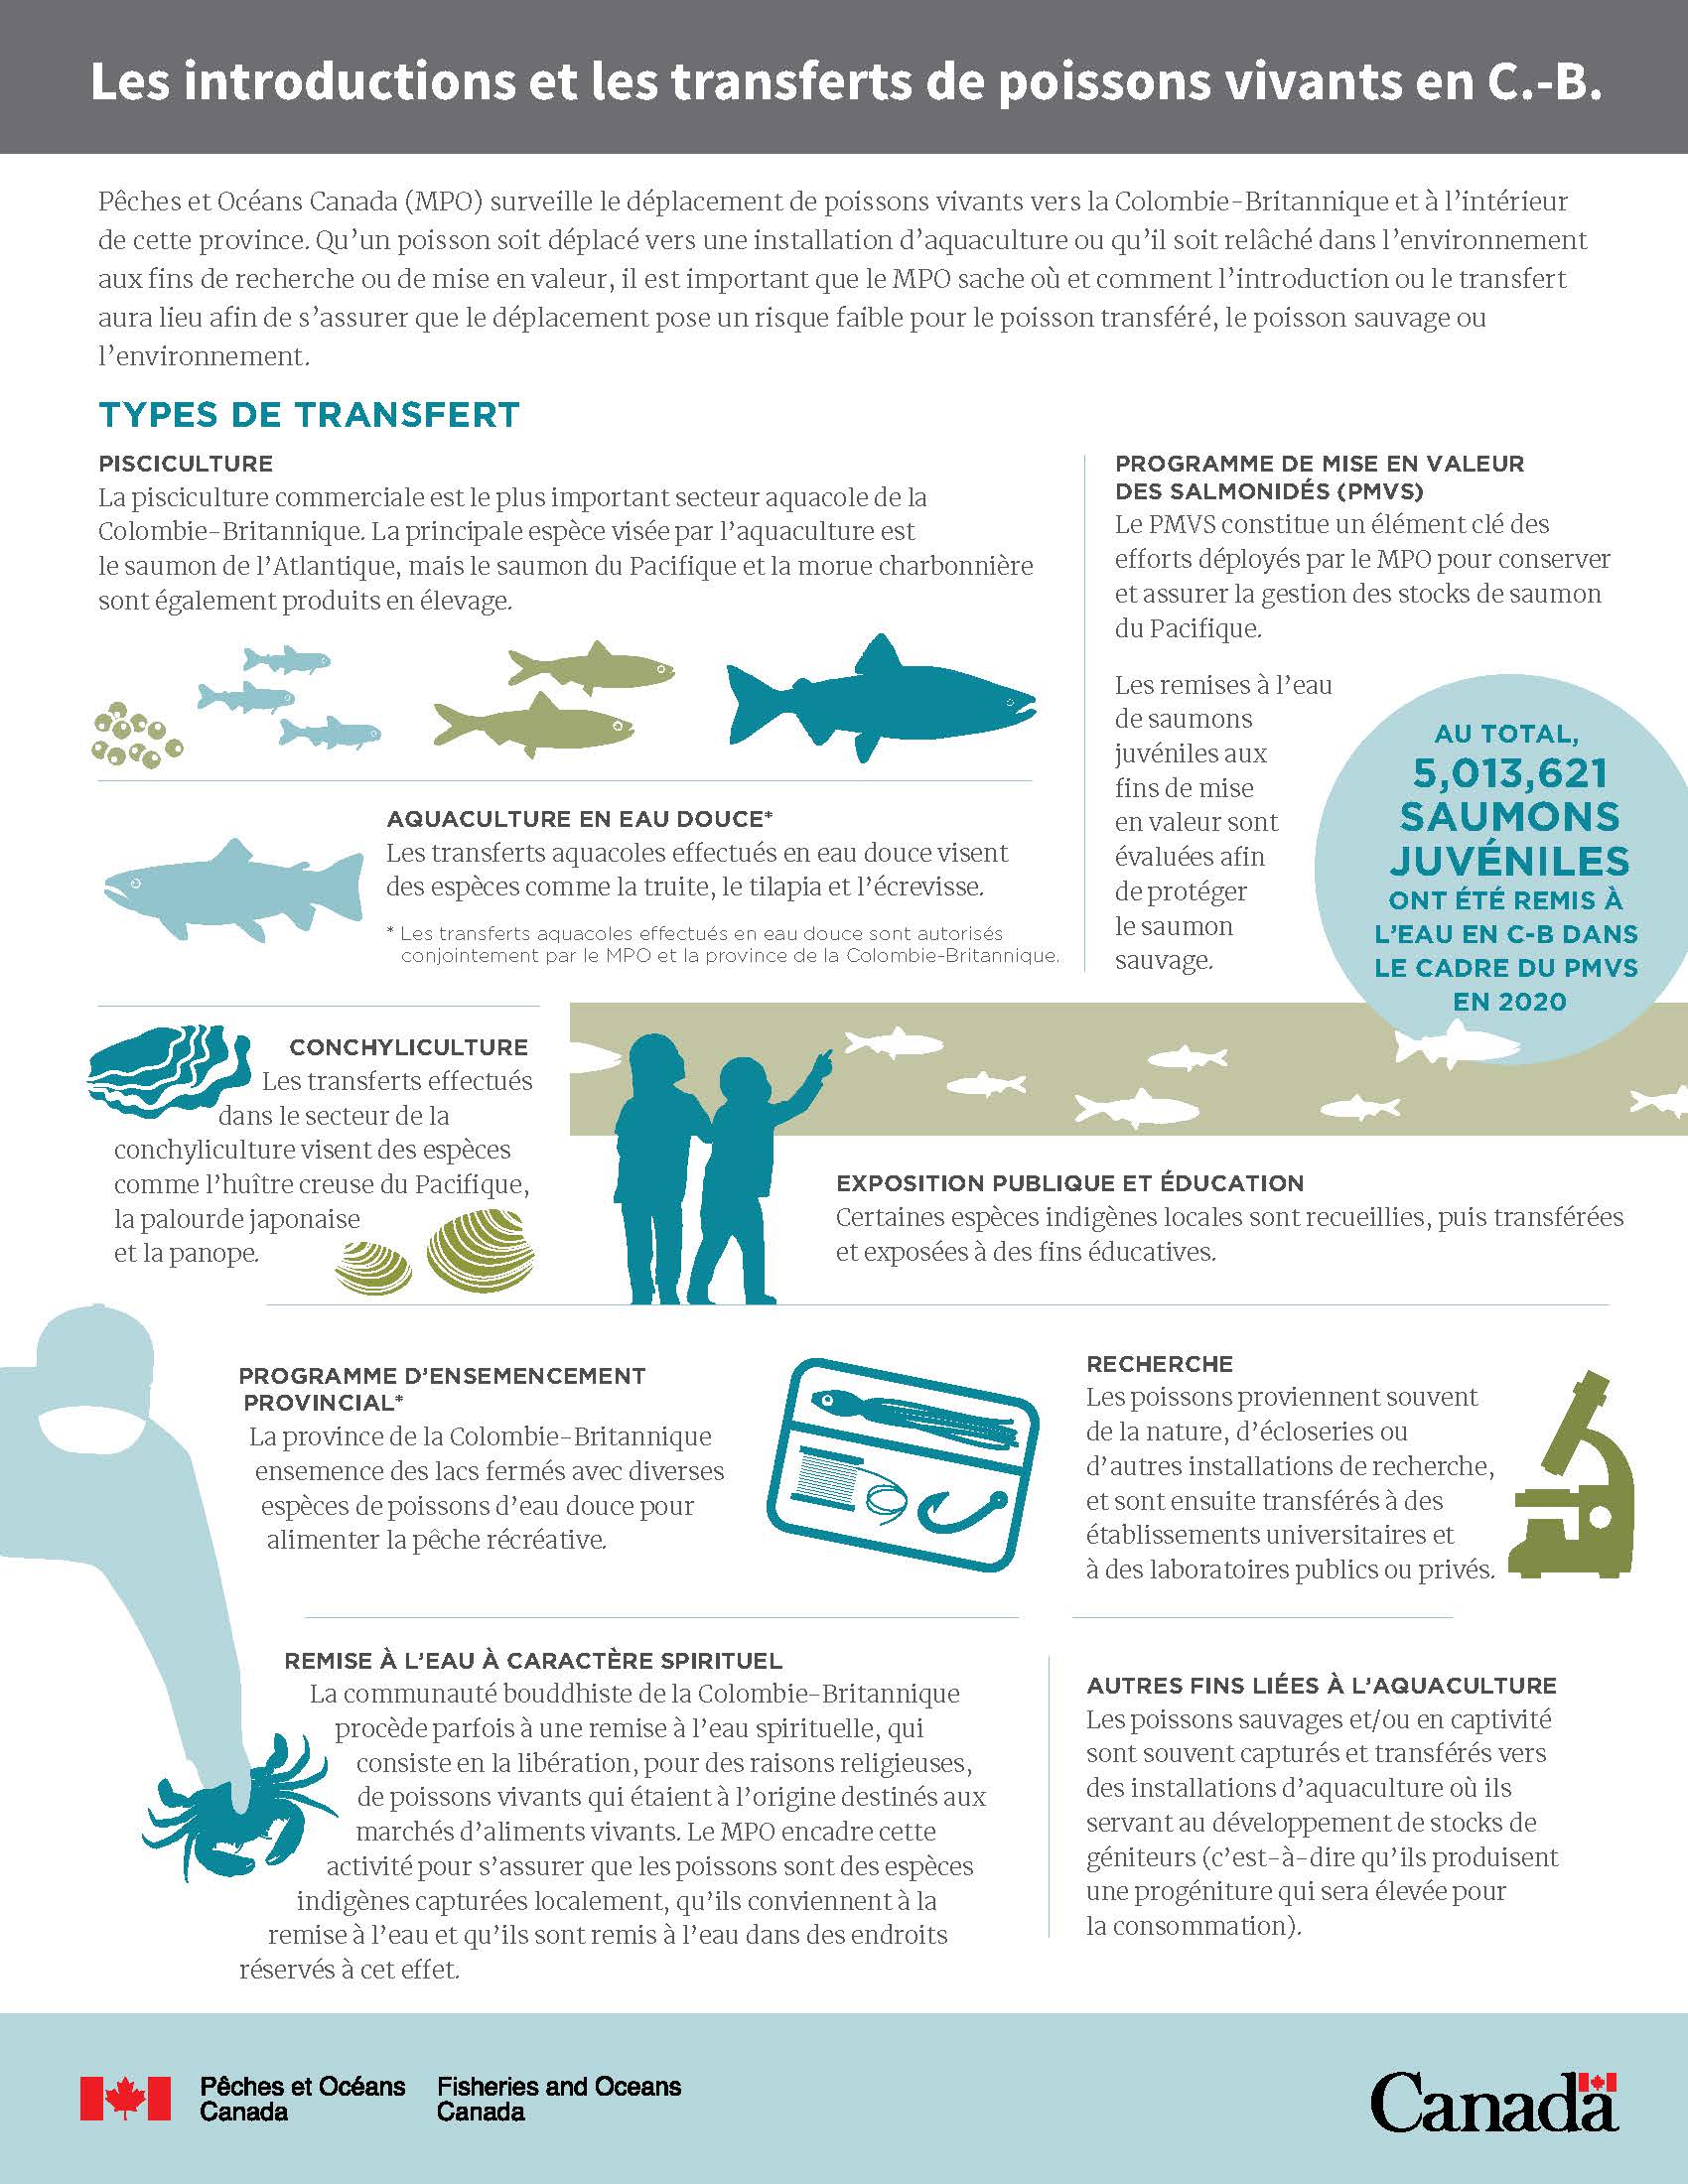 Infographie : Les introductions et les transferts de poissons vivants en la Colombie-Britannique (page 1)